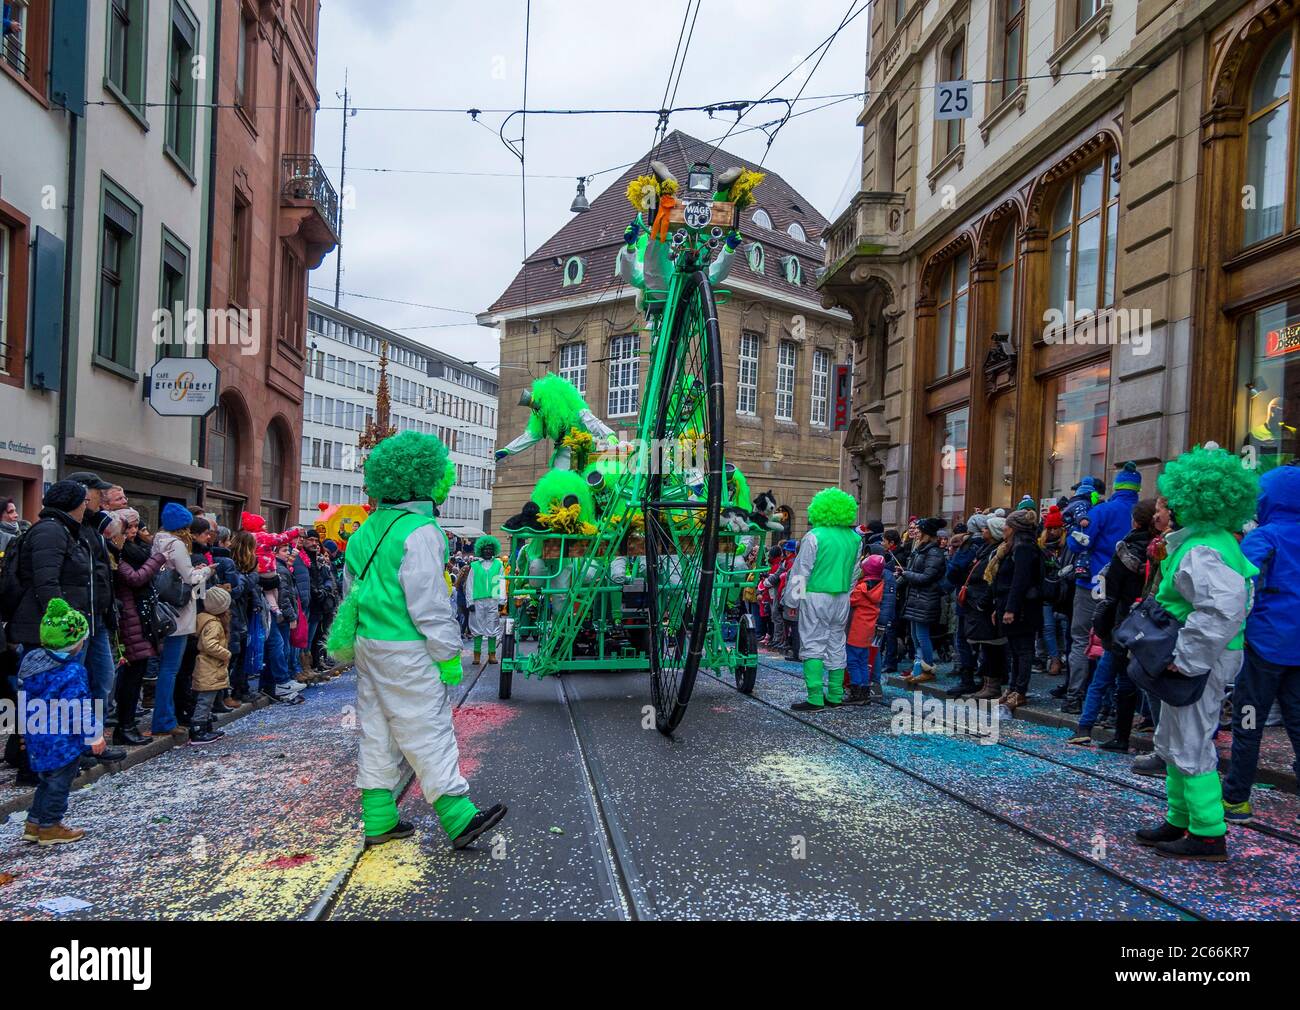 Défilé du Carnaval de Bâle, Carnaval de Bâle, Bâle, Suisse, Europe Banque D'Images